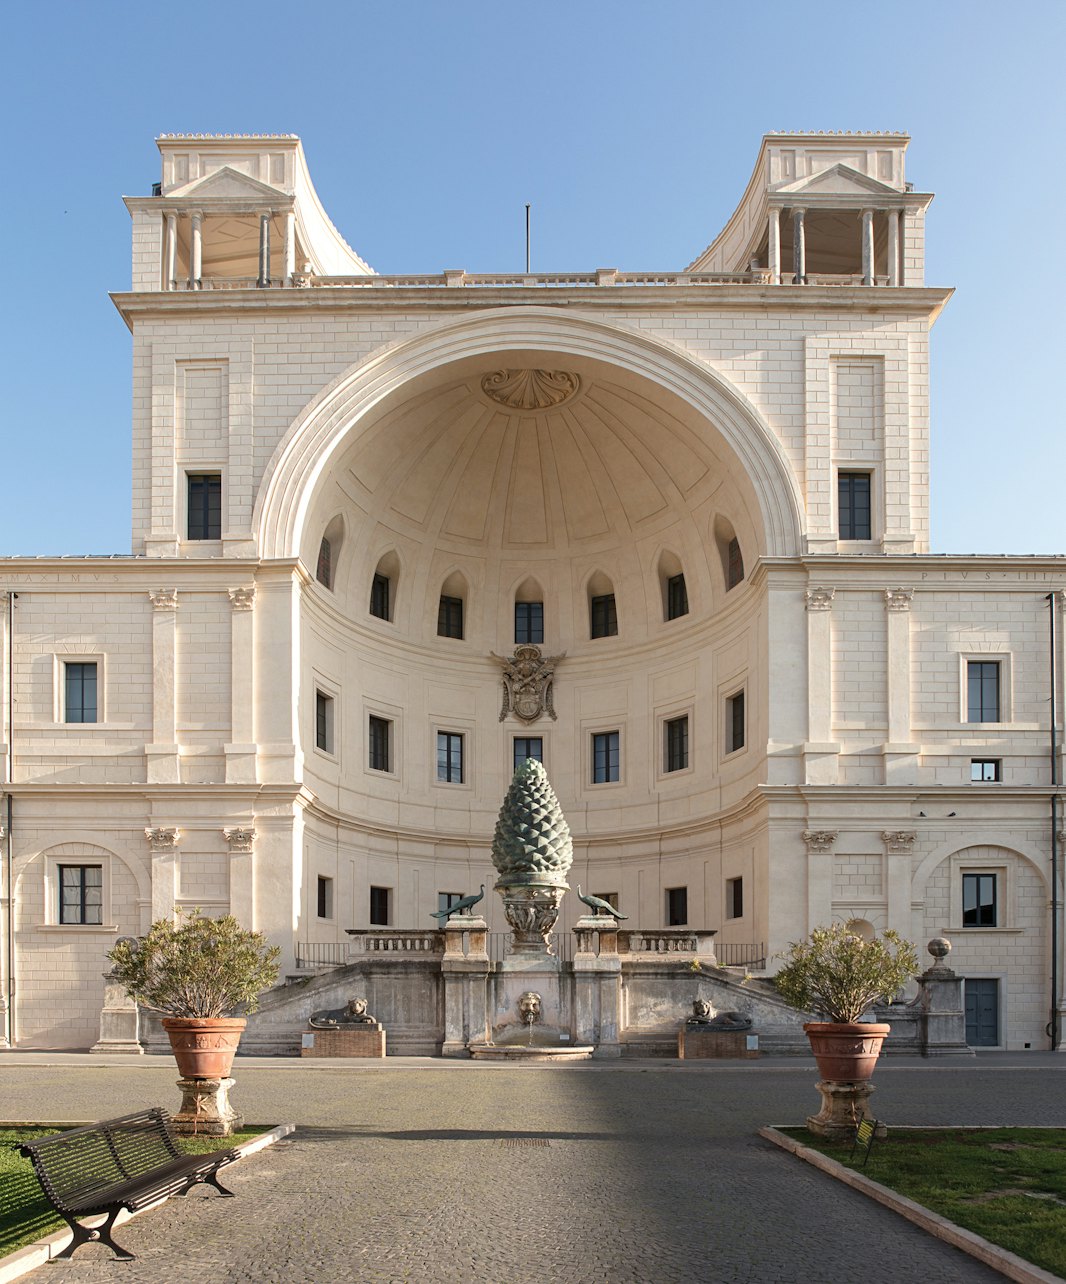 Museos Vaticanos y Capilla Sixtina: Entrada anticipada con desayuno - Alojamientos en Roma